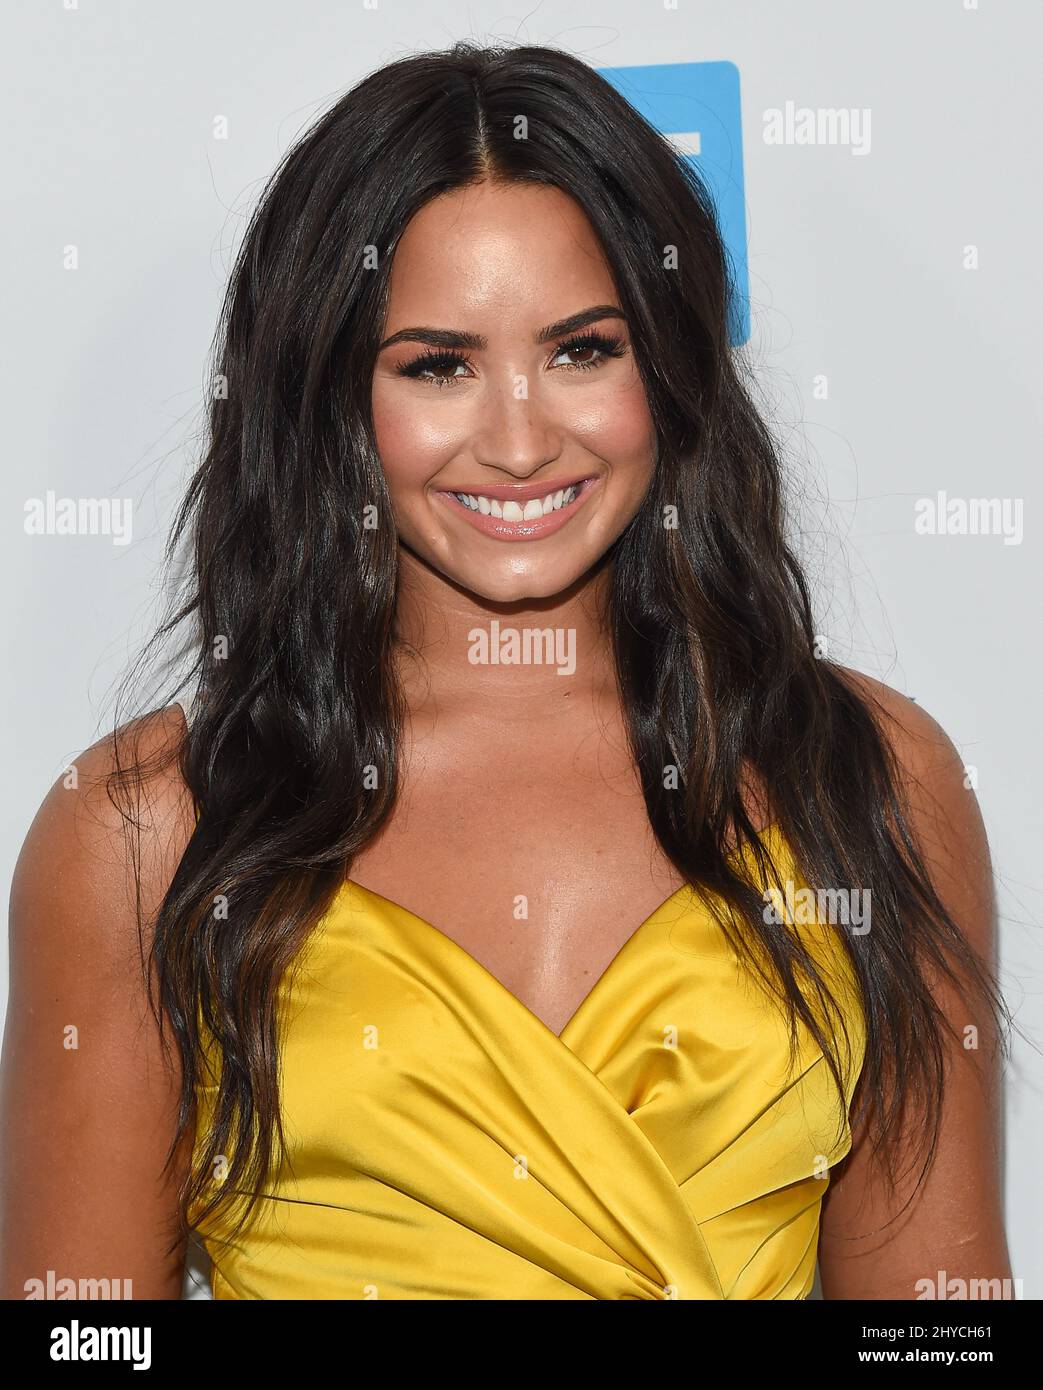 Demi Lovato participant À LA FÊTE DE LA WE qui s'est tenue au Forum de Los Angeles, États-Unis Banque D'Images